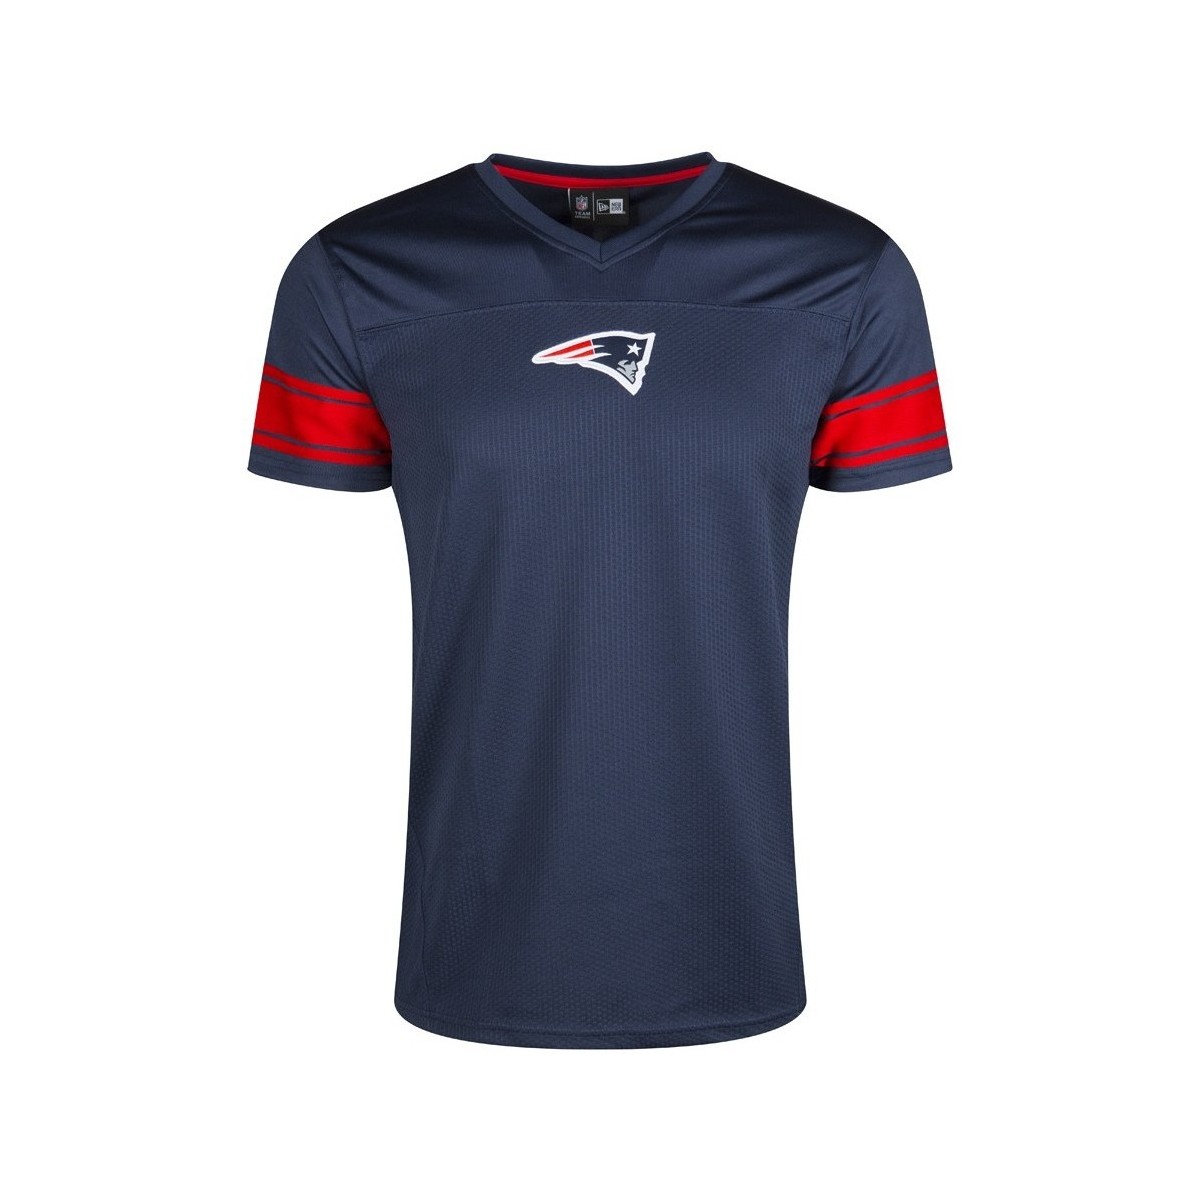 Vêtements T-shirts manches courtes New-Era Maillot NFL de supporters peti Multicolore